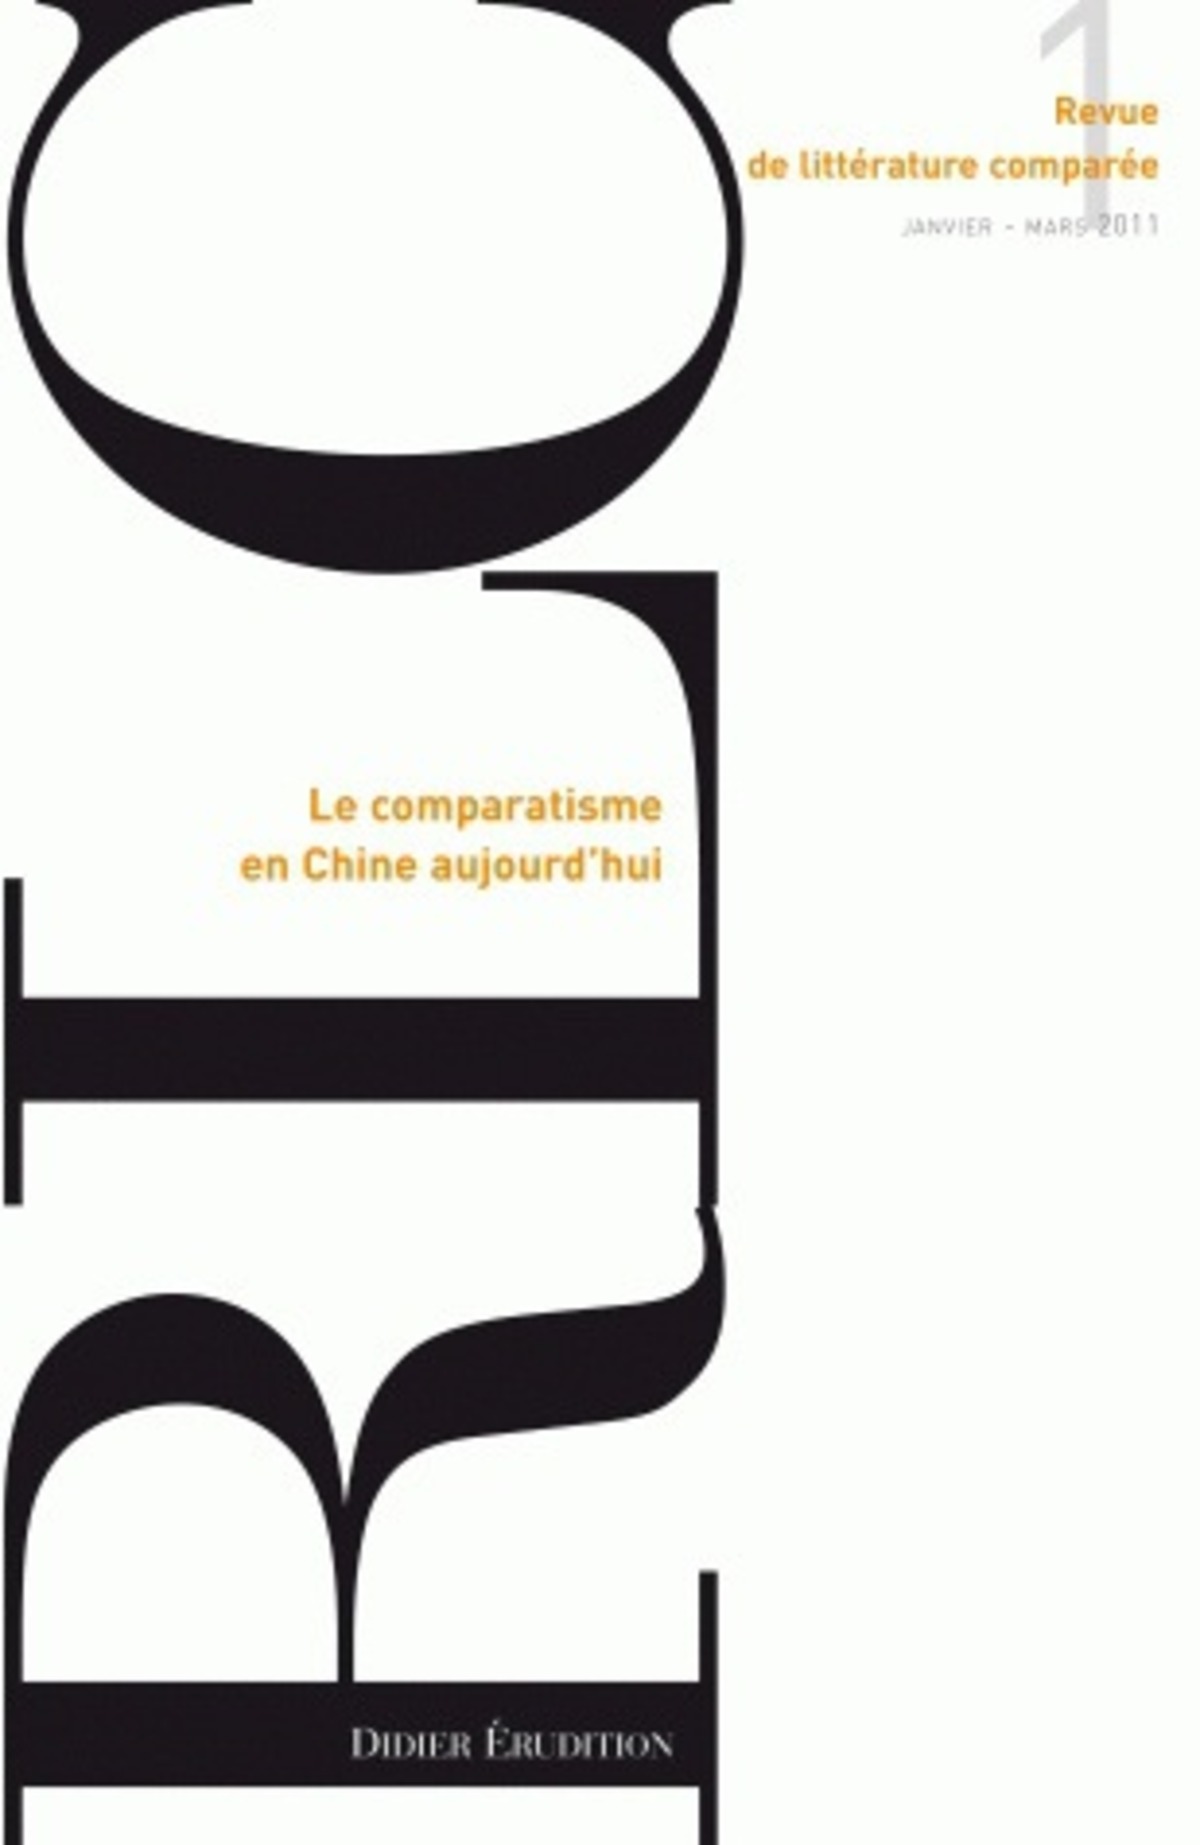 Revue de littérature comparée - N°1/2011